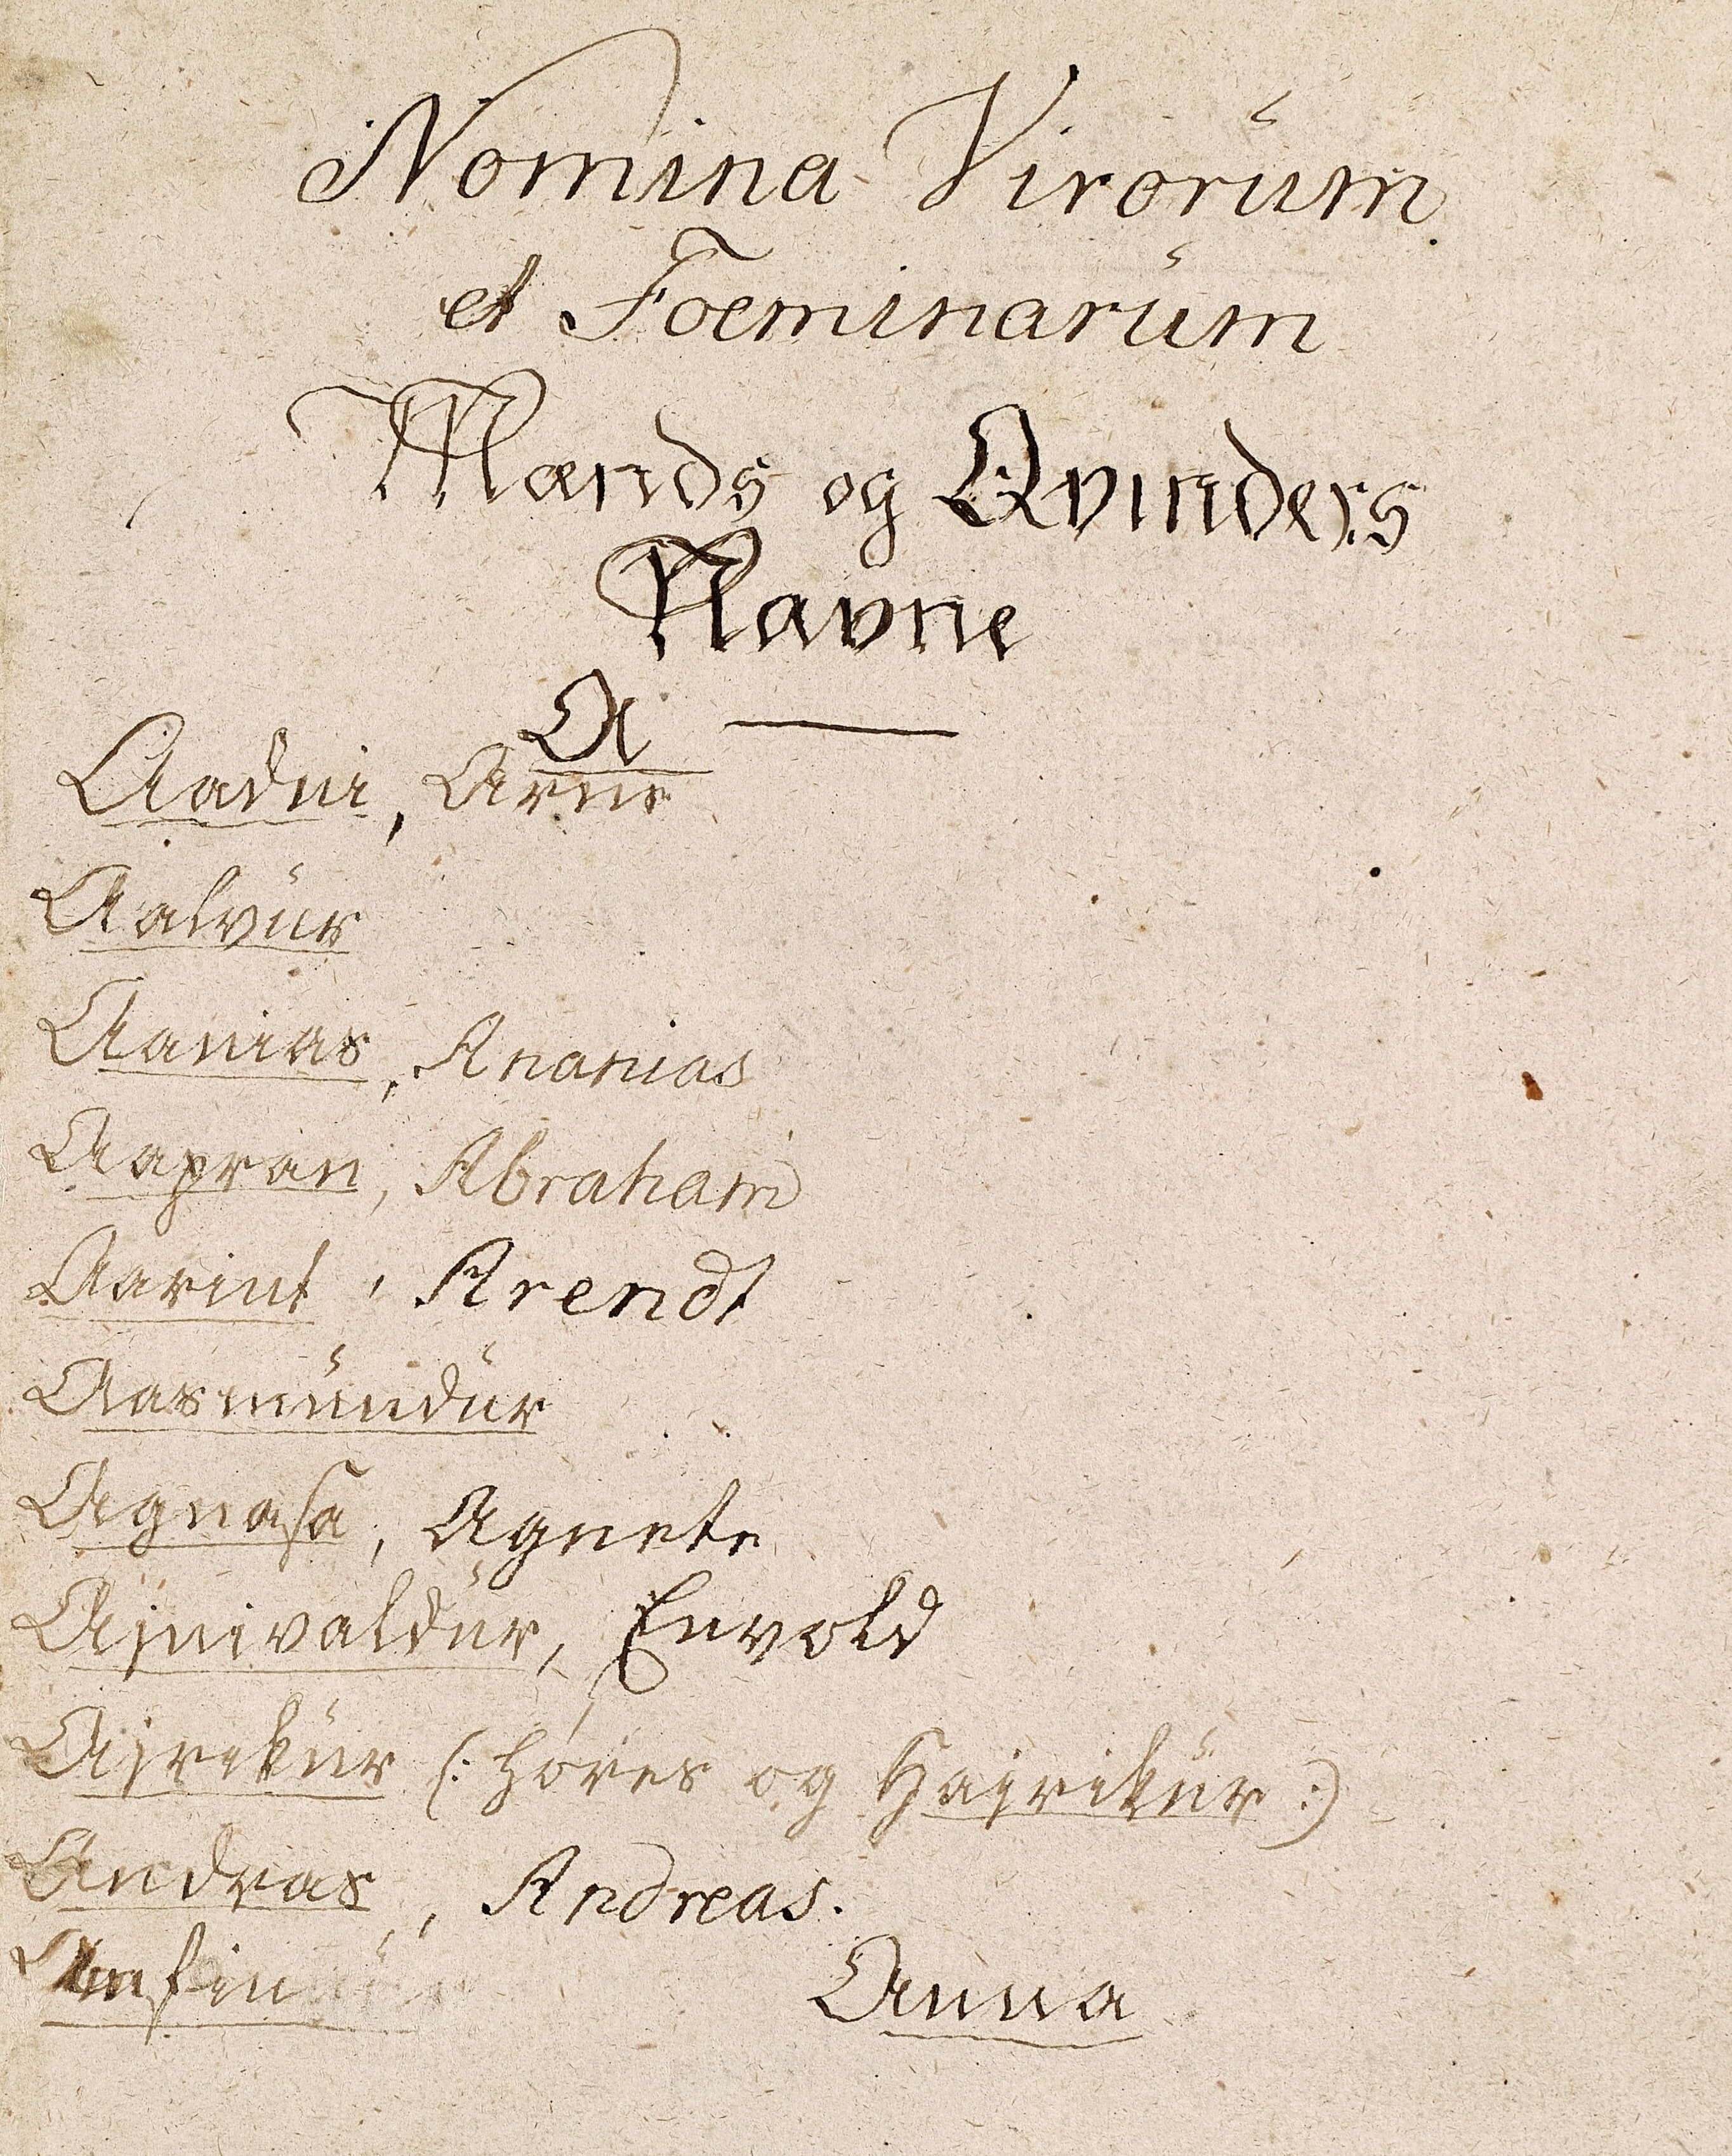 A handwritten name list